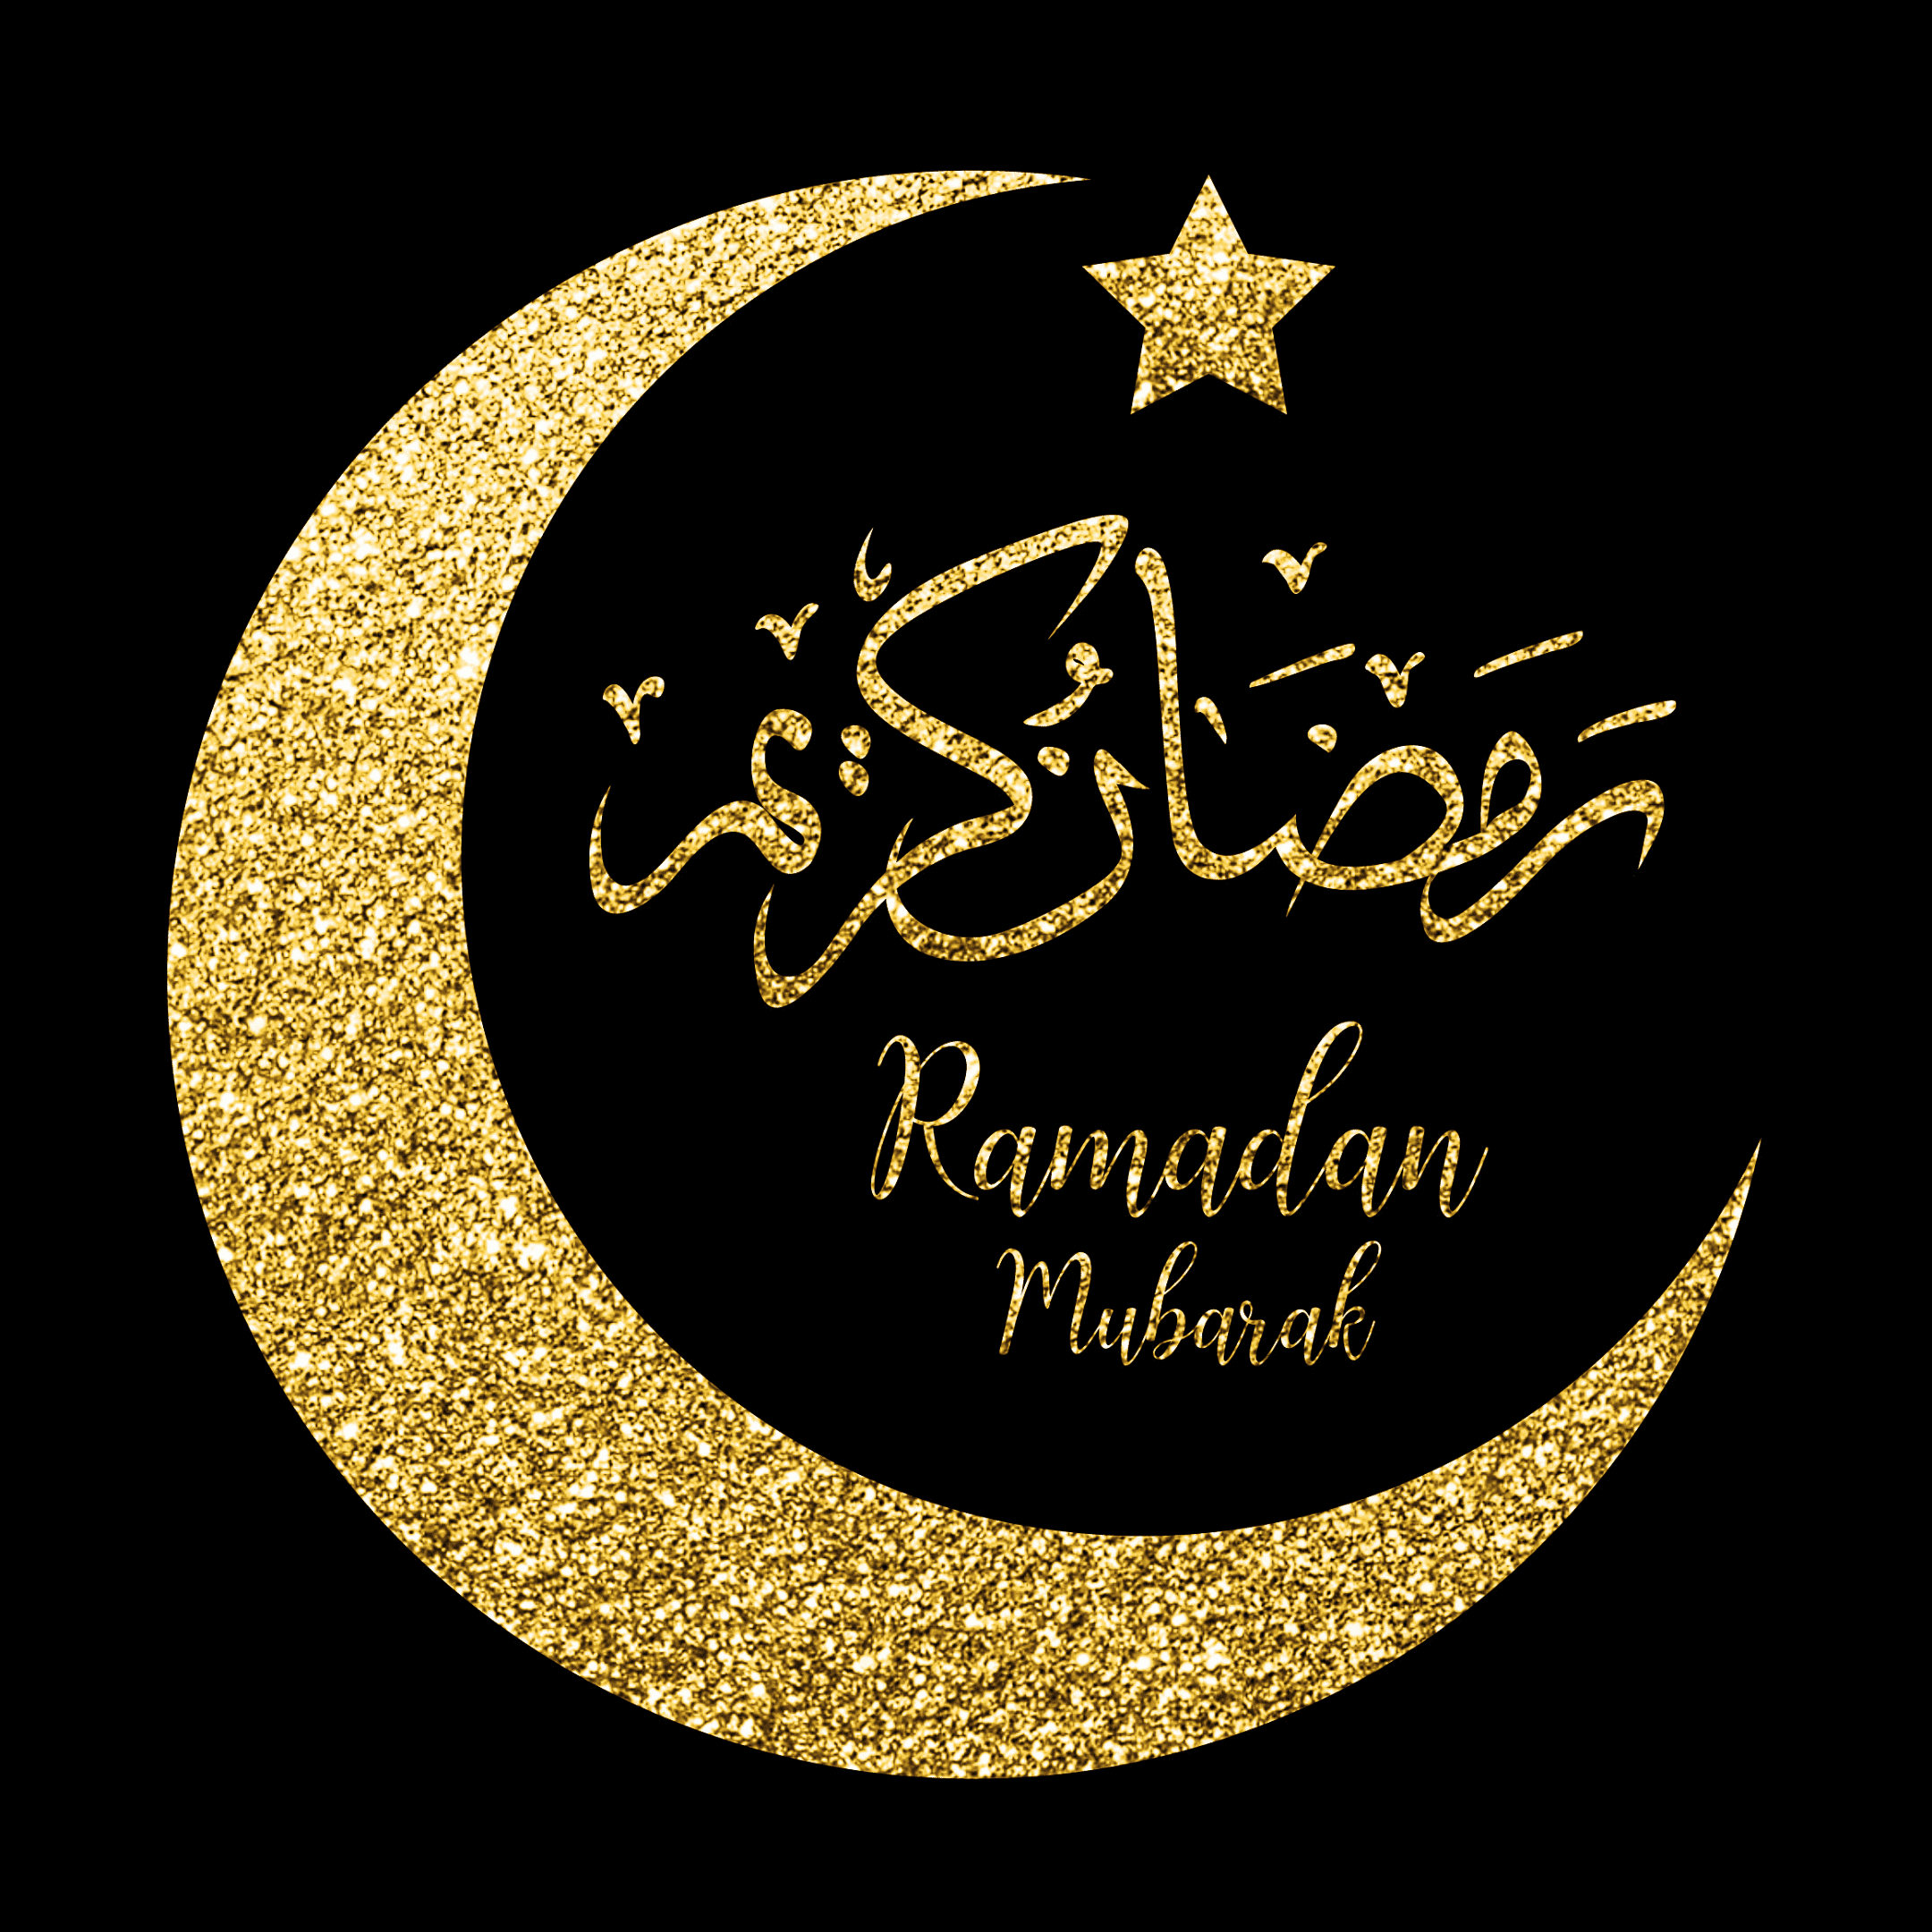 خلفيات رمضان رائعة لعام 2022للأصدقاء والأقارب لقدم شهر رمضان